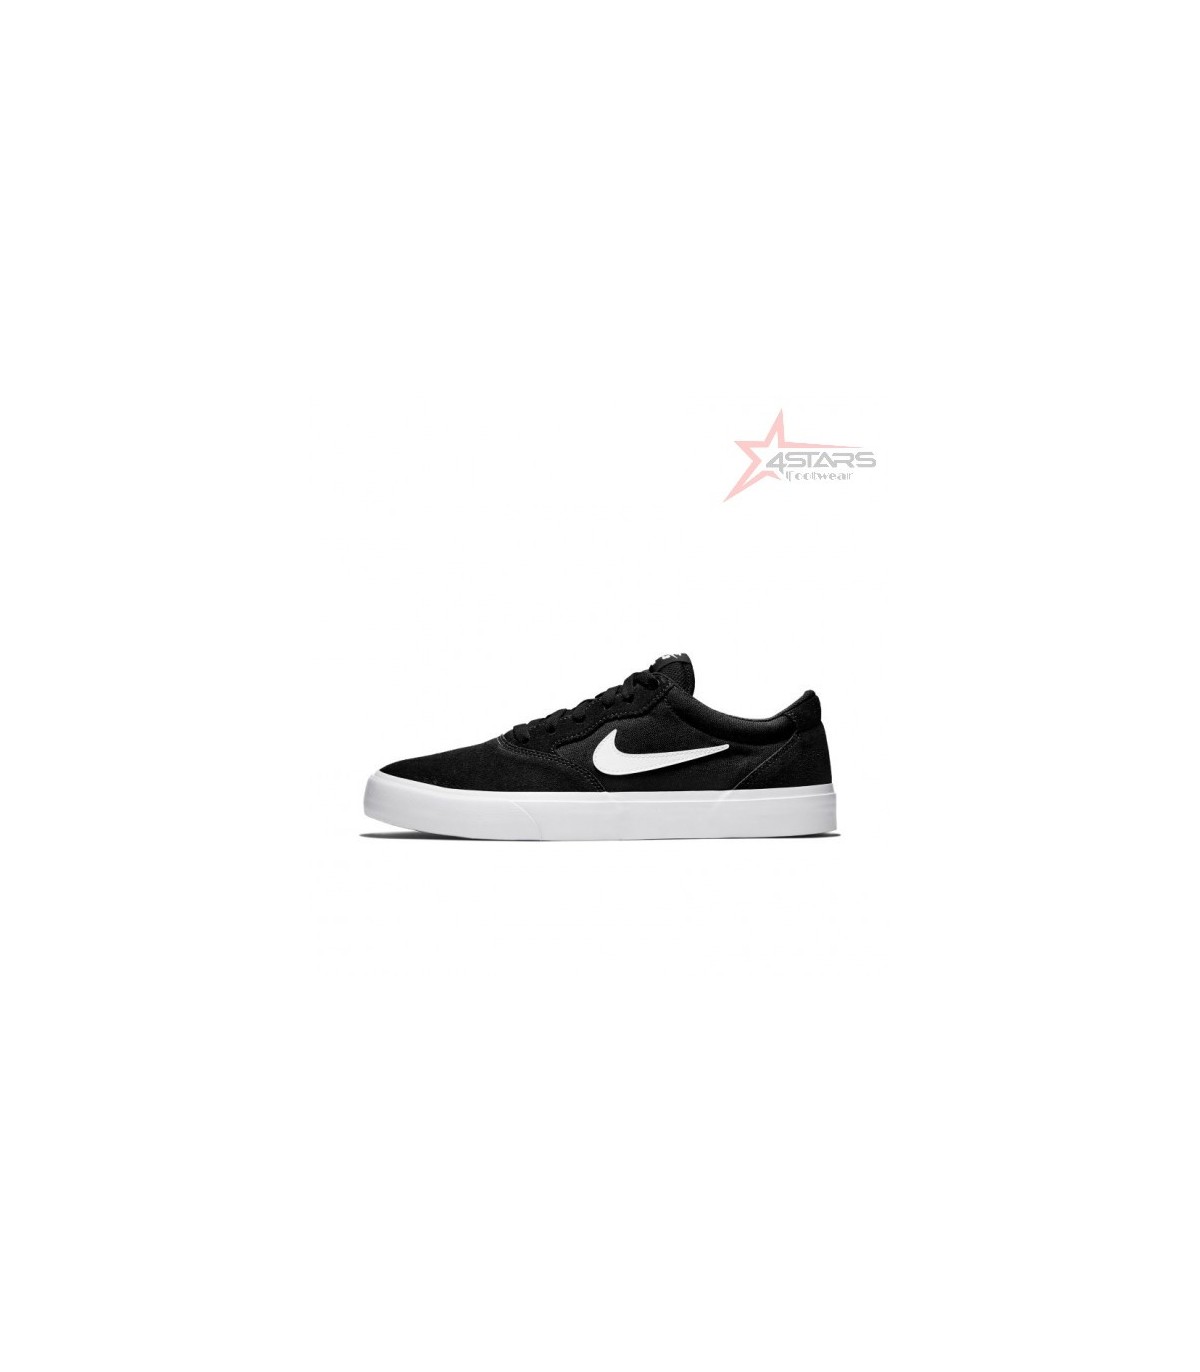 Nike SB Chron 2 - Black and White